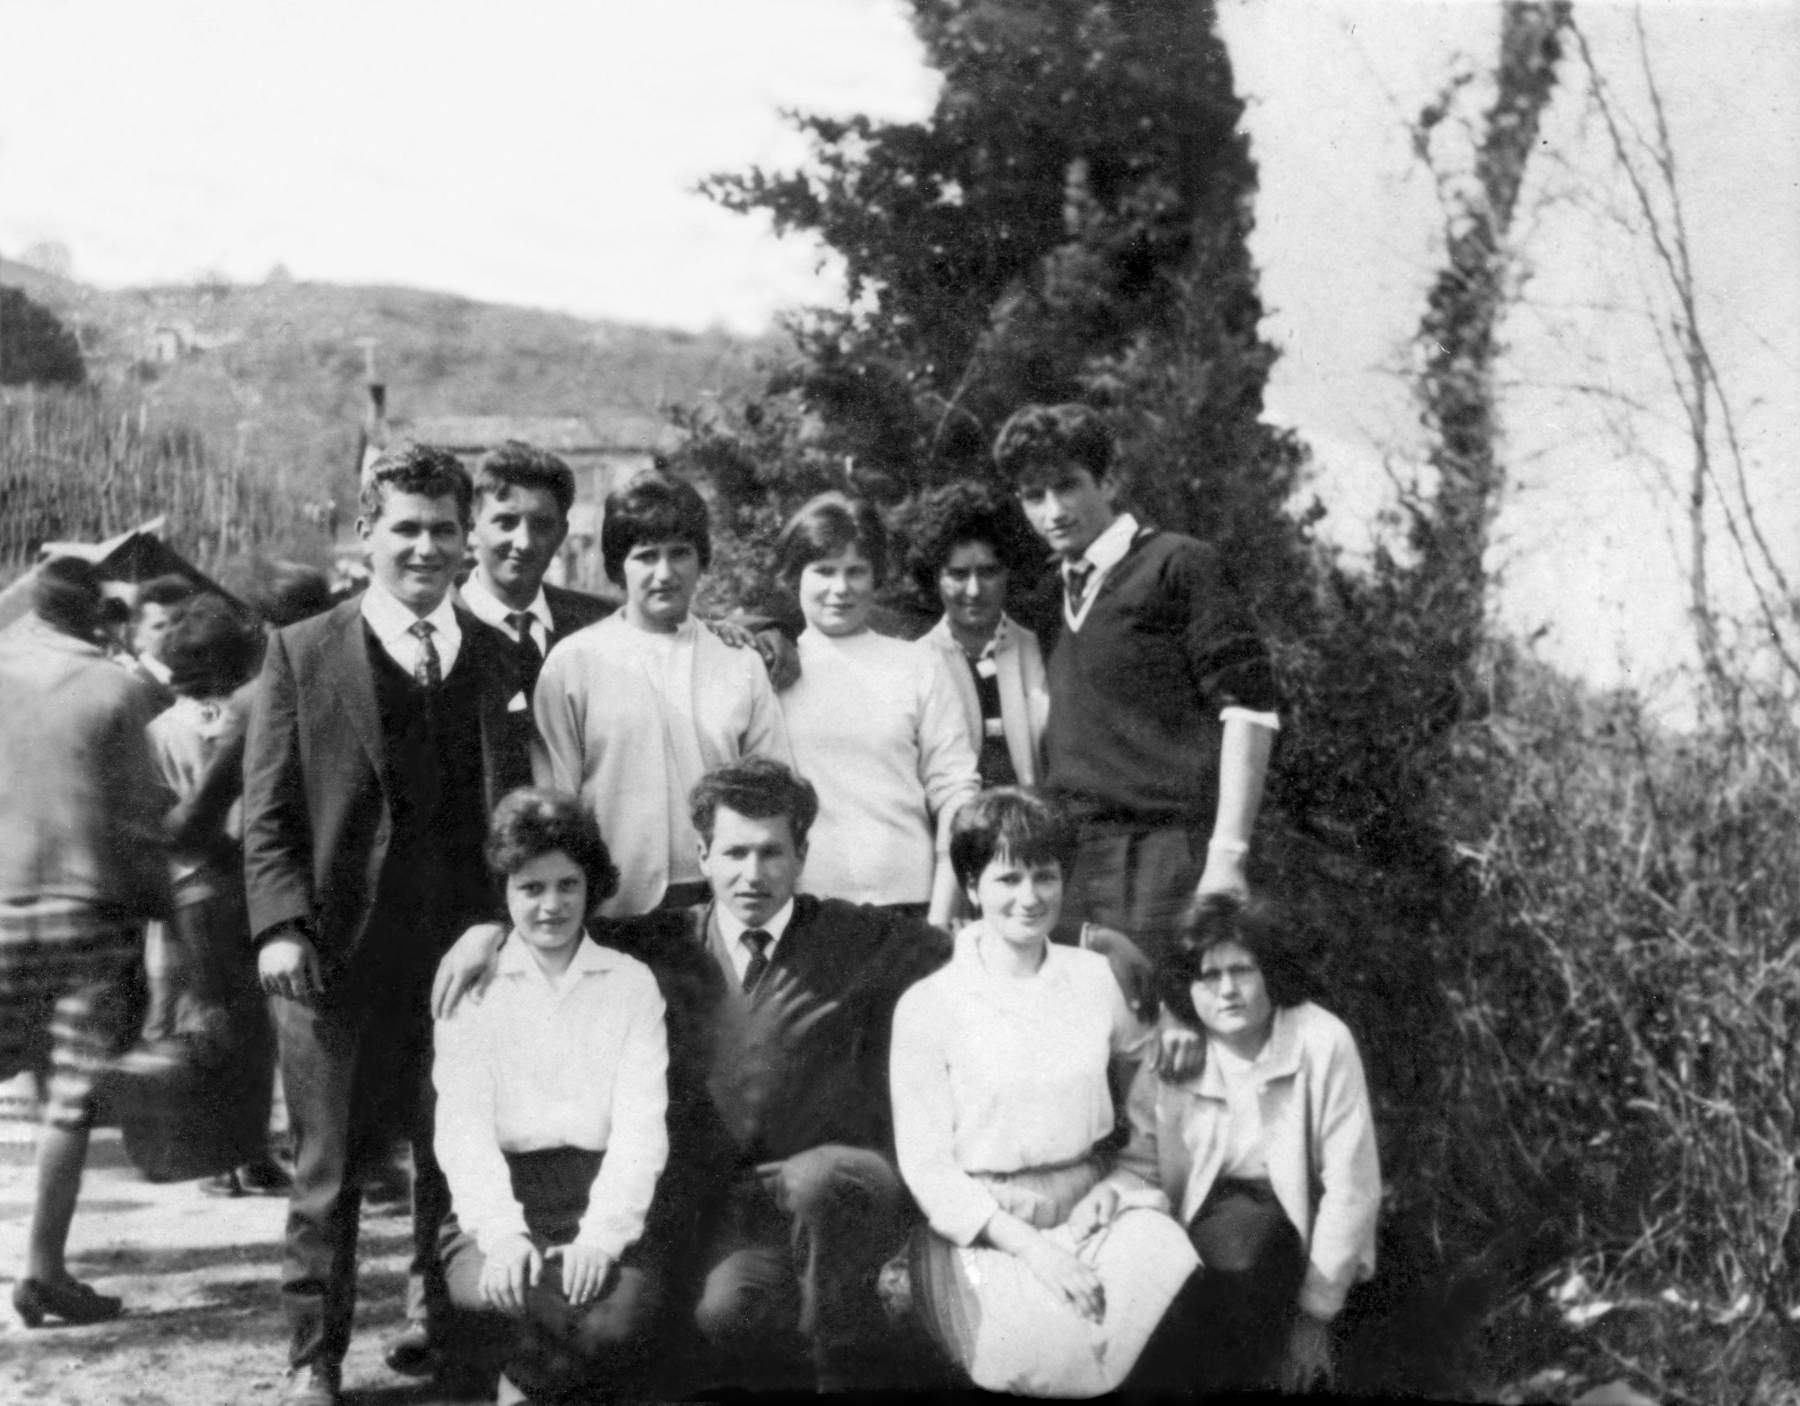 In Rocca a Cornuda, circa 1964. Gallina Graziella, Gazzola Mario, Innocente Graziella, Precoma Teresa, Gazzola Renzo, Gallina Silvano, Baldisser Maria, Gallina Giuseppina, Baldisser Amelia, Innocente Egidio.